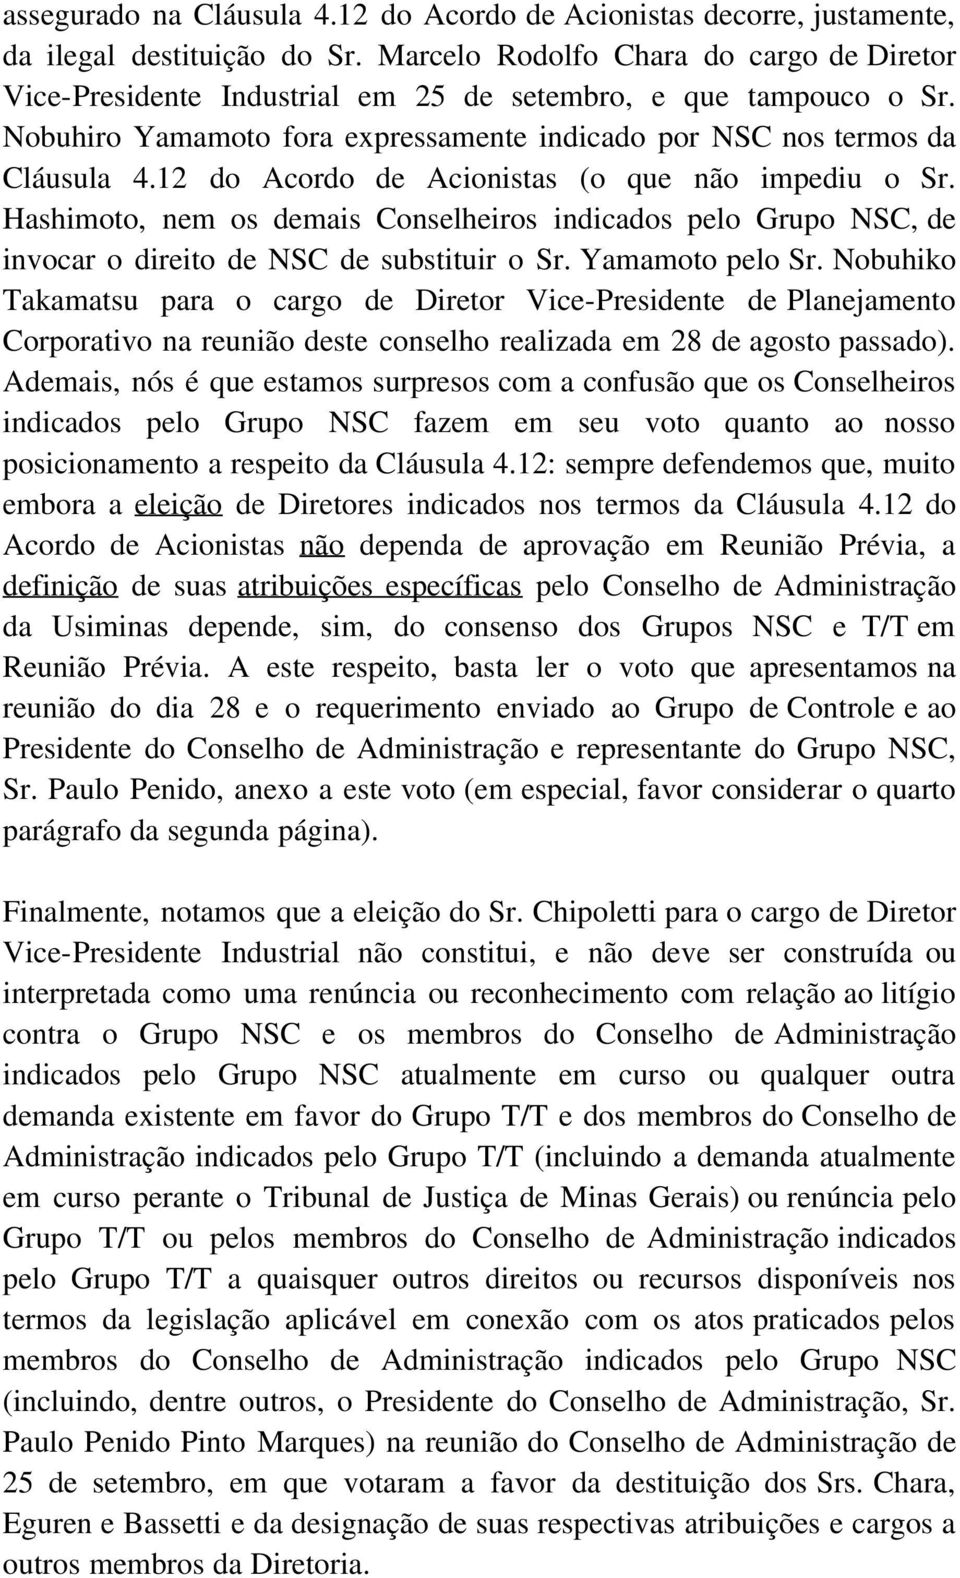 12 do Acordo de Acionistas (o que não impediu o Sr. Hashimoto, nem os demais Conselheiros indicados pelo Grupo NSC, de invocar o direito de NSC de substituir o Sr. Yamamoto pelo Sr.